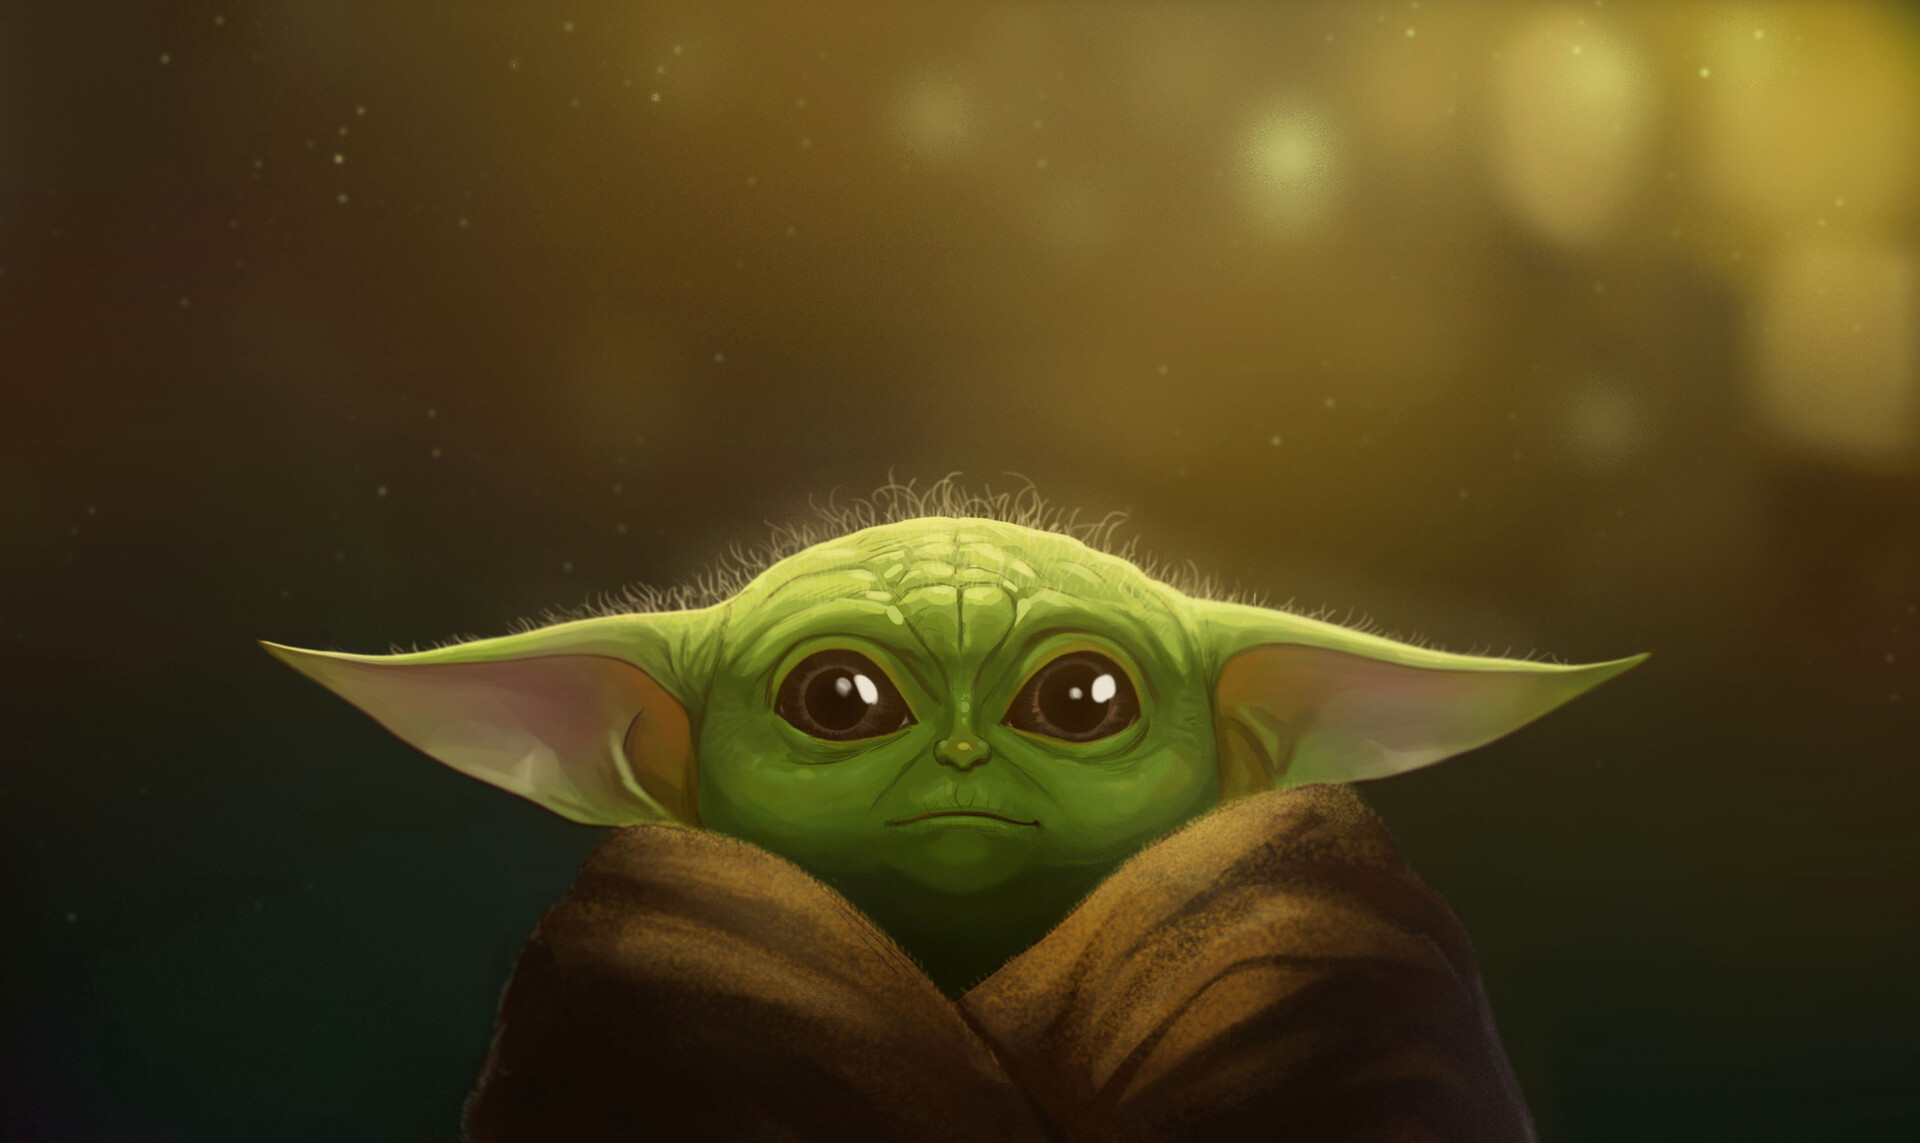  Baby  Yoda  FanArt 2021 Wallpaper  HD Artist 4K  Wallpapers  